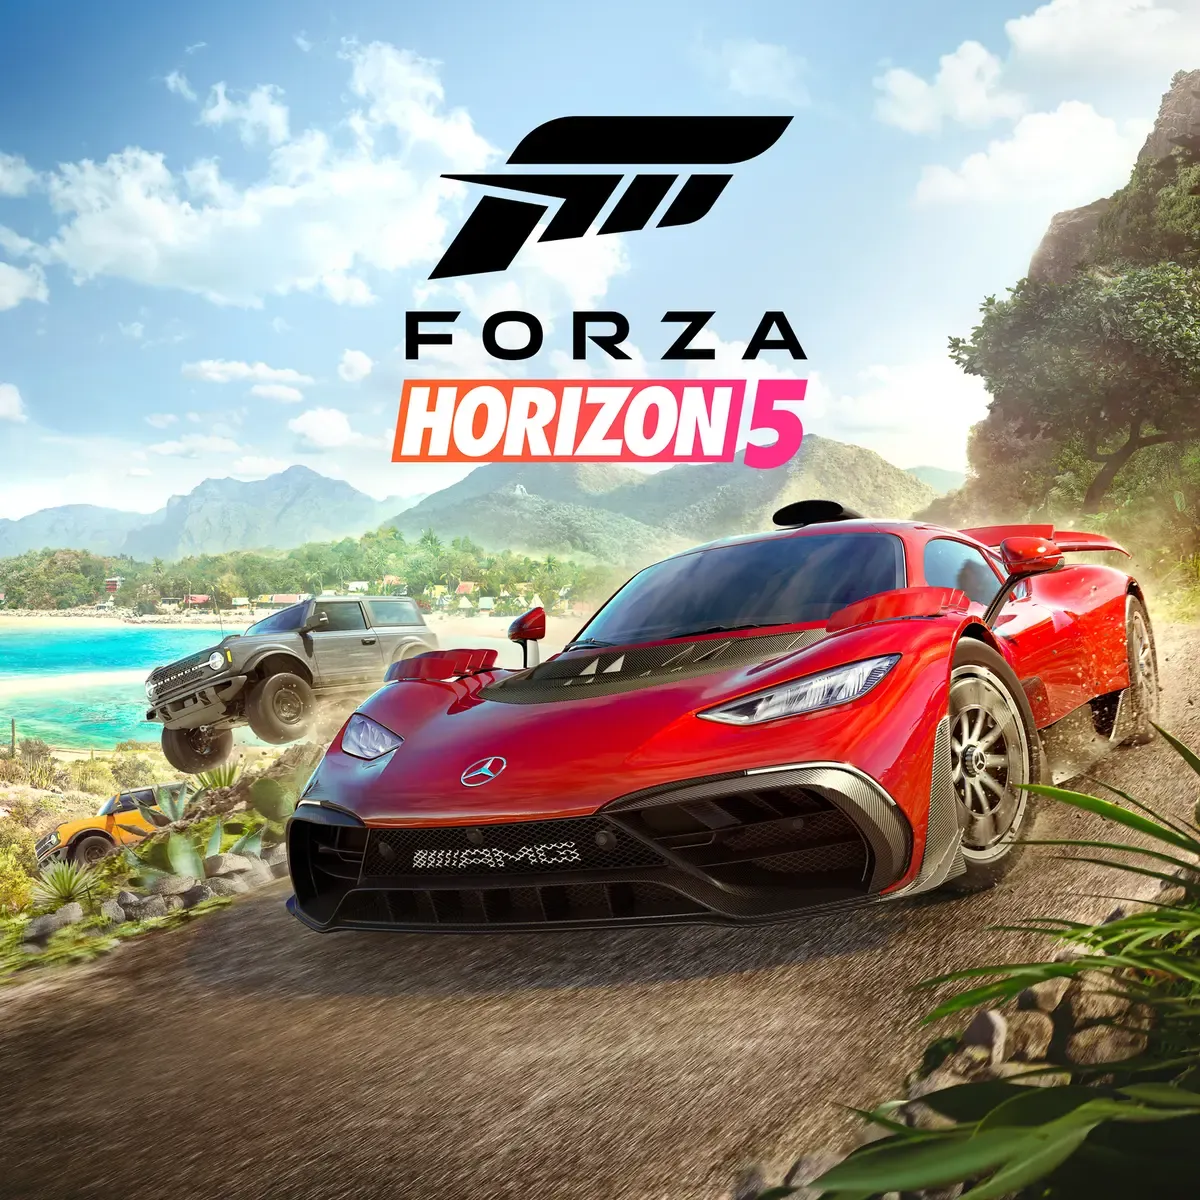 Forza Horizon 5 (PC) EU Xbox One/Series/Windows